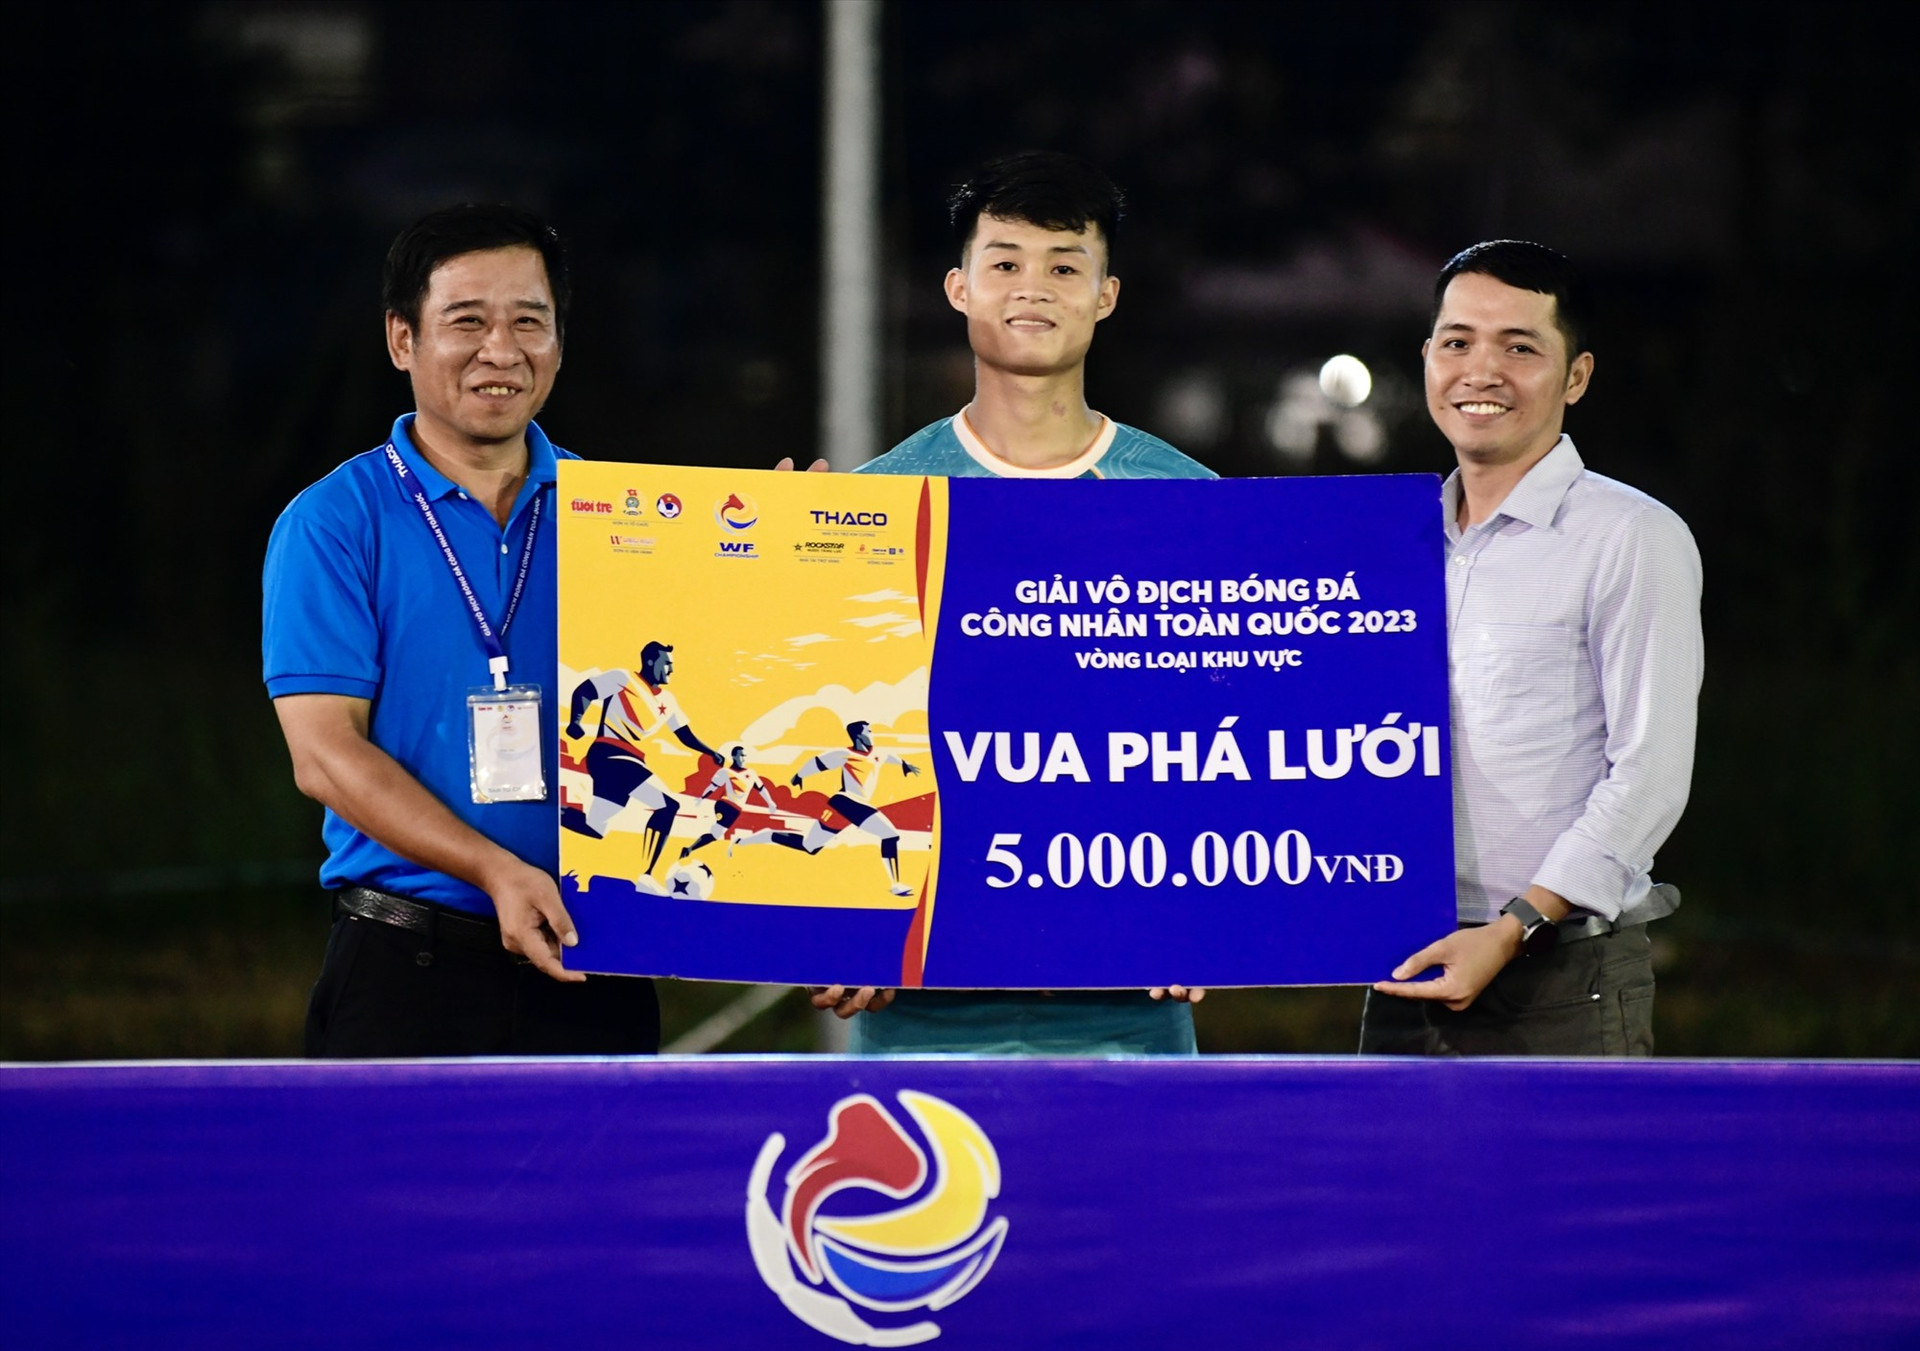 Cầu thủ Trần Văn Viên đạt danh hiệu vua phá lưới giải đấu vòng loại.